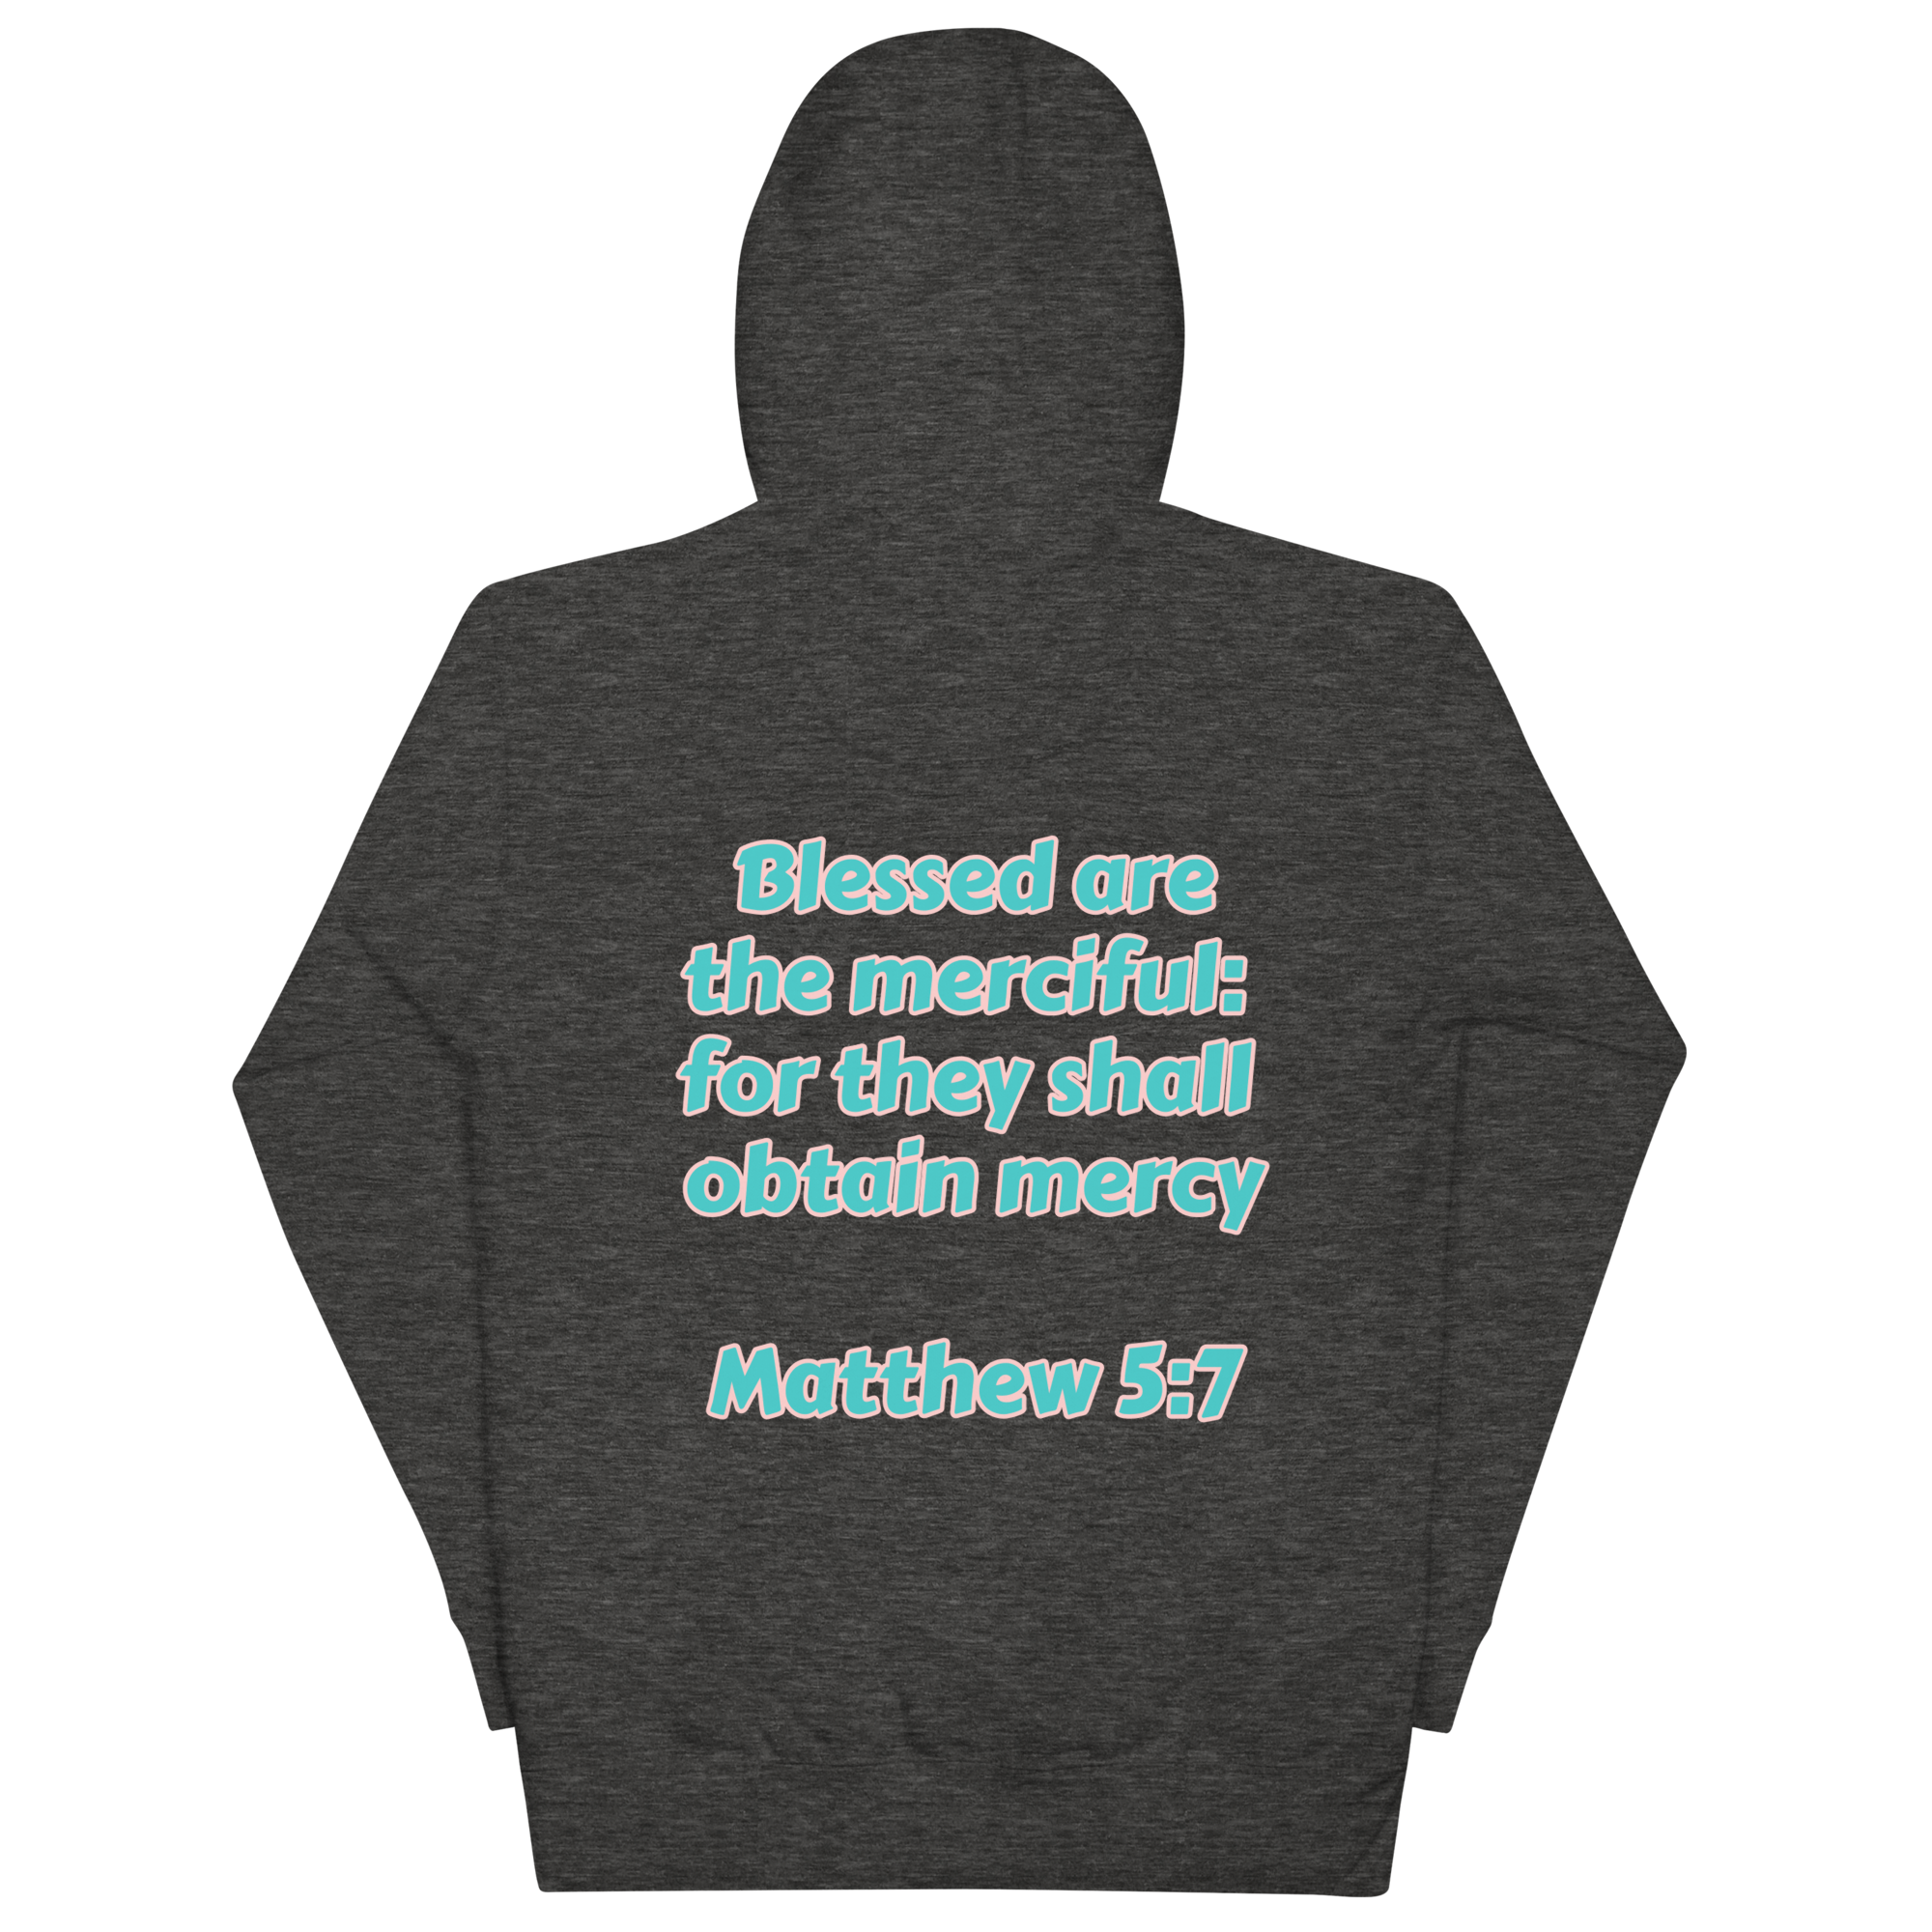 Preach Mercy Matthew 5:7 Unisex Hoodie